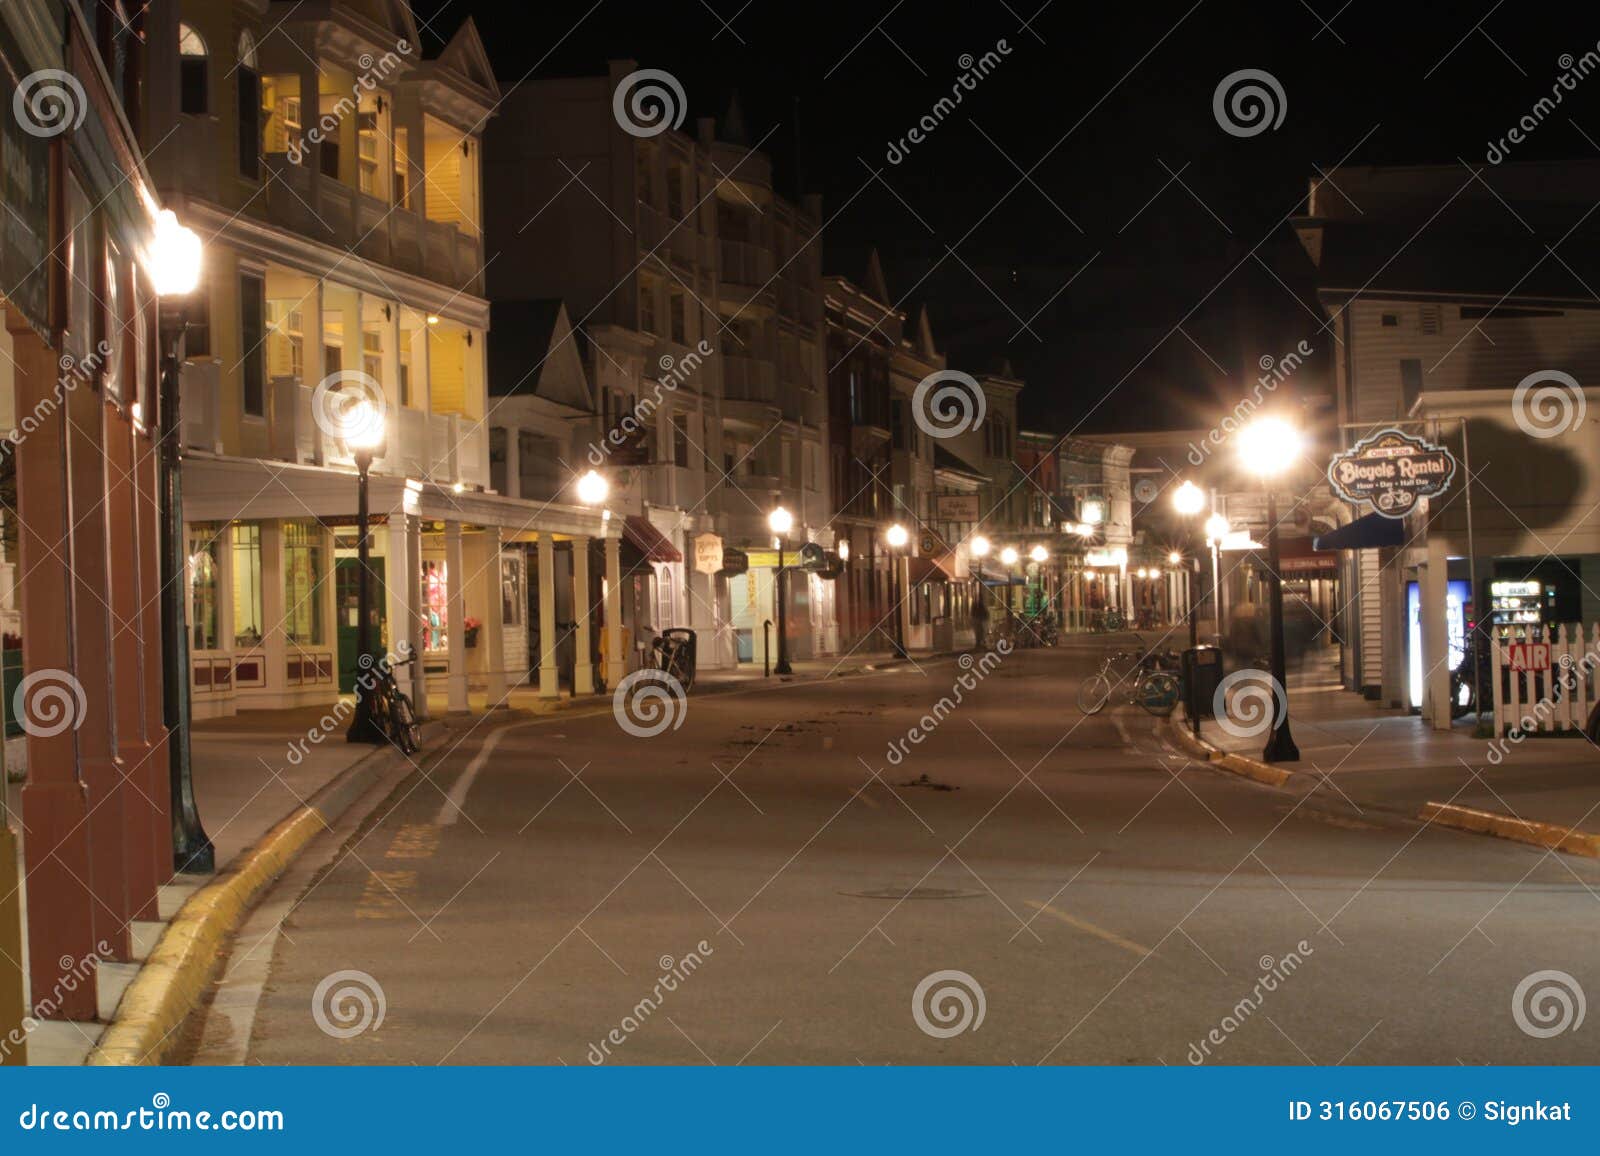 mackinac island michigan main street at night